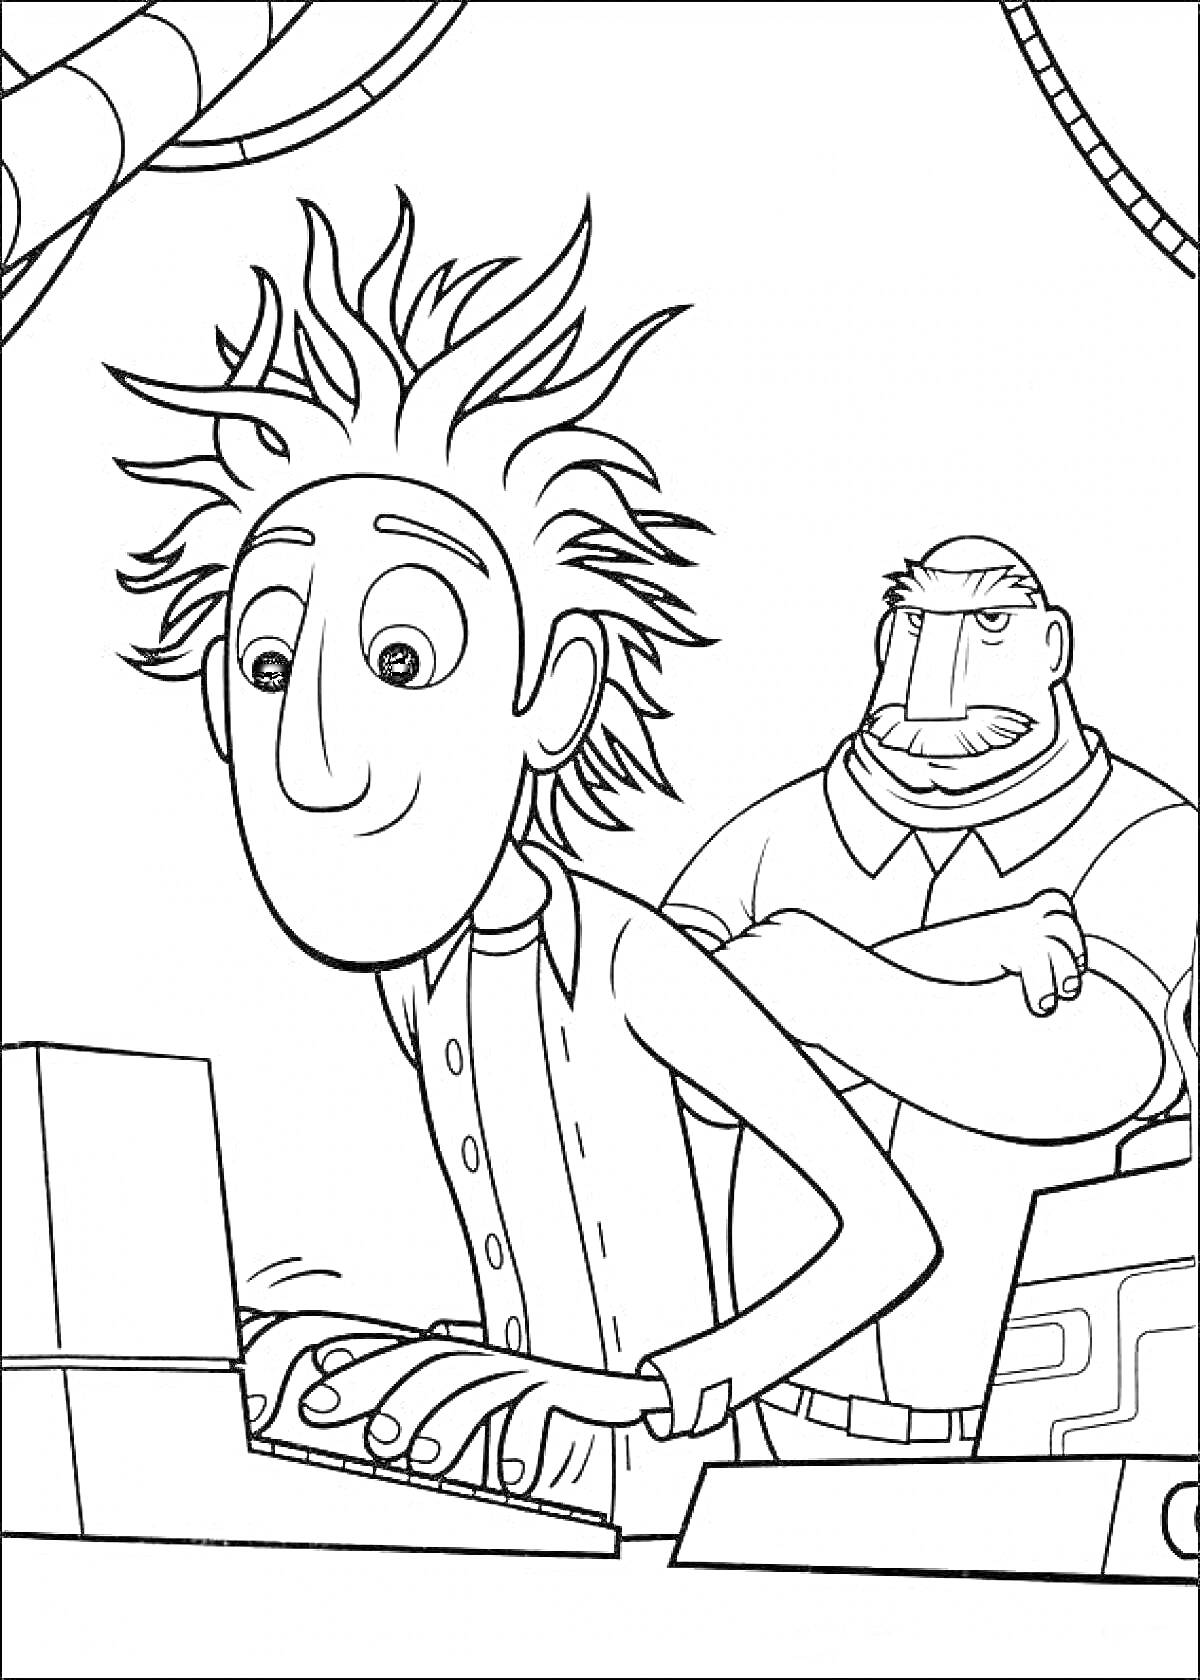 Человек с растрёпанными волосами за компьютером и мужчина с усами на заднем фоне